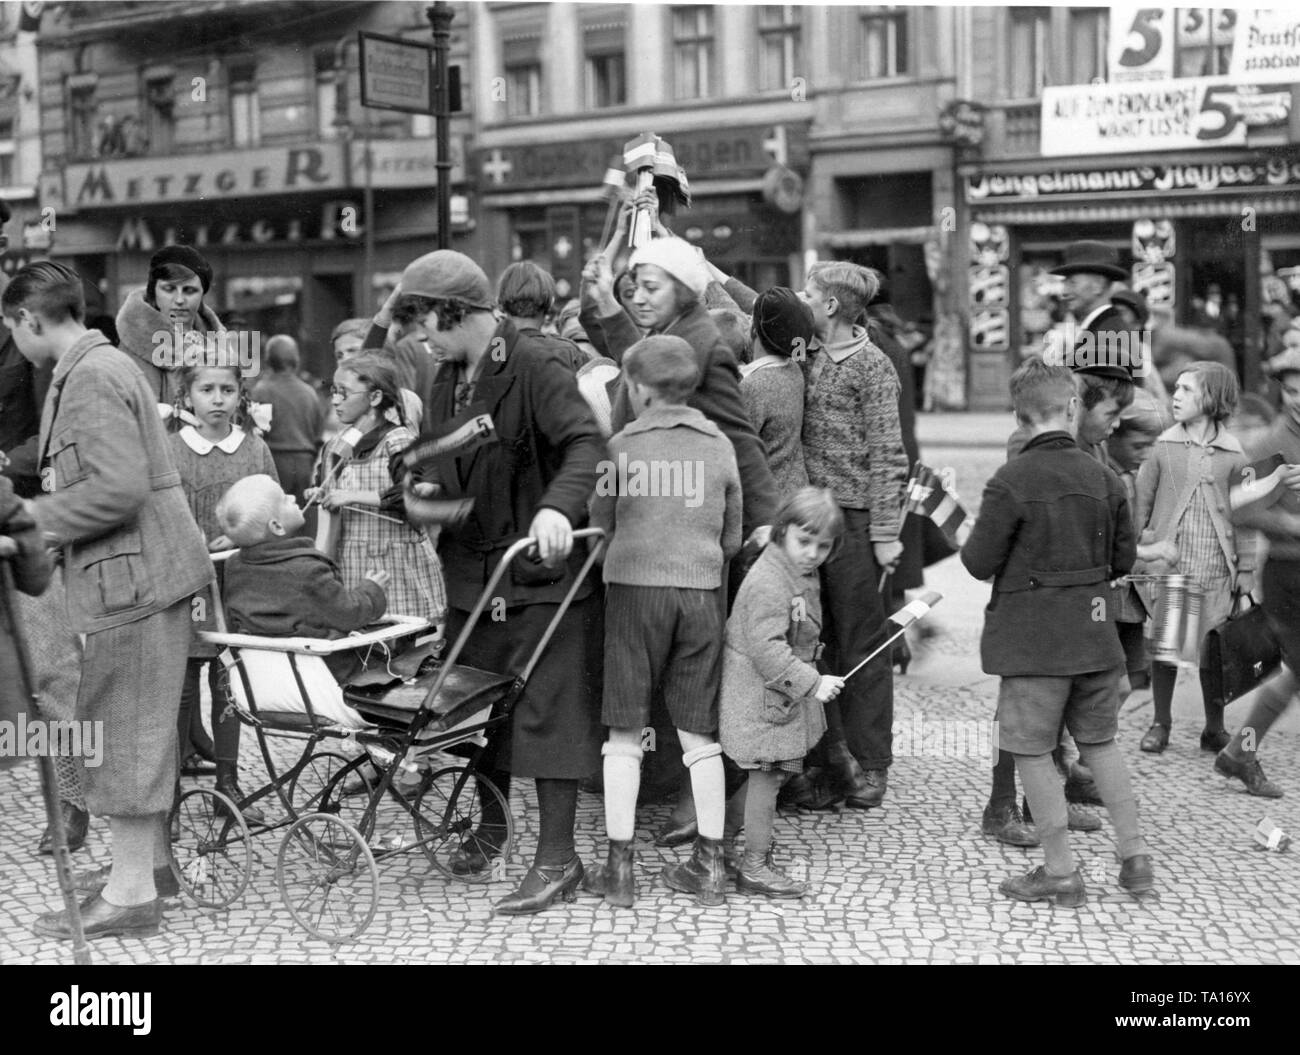 Comme une campagne électorale, les jeunes Bismarck distribue des noir-blanc-rouge drapeaux devant d'une agence dans le quartier de Neukölln. Banque D'Images